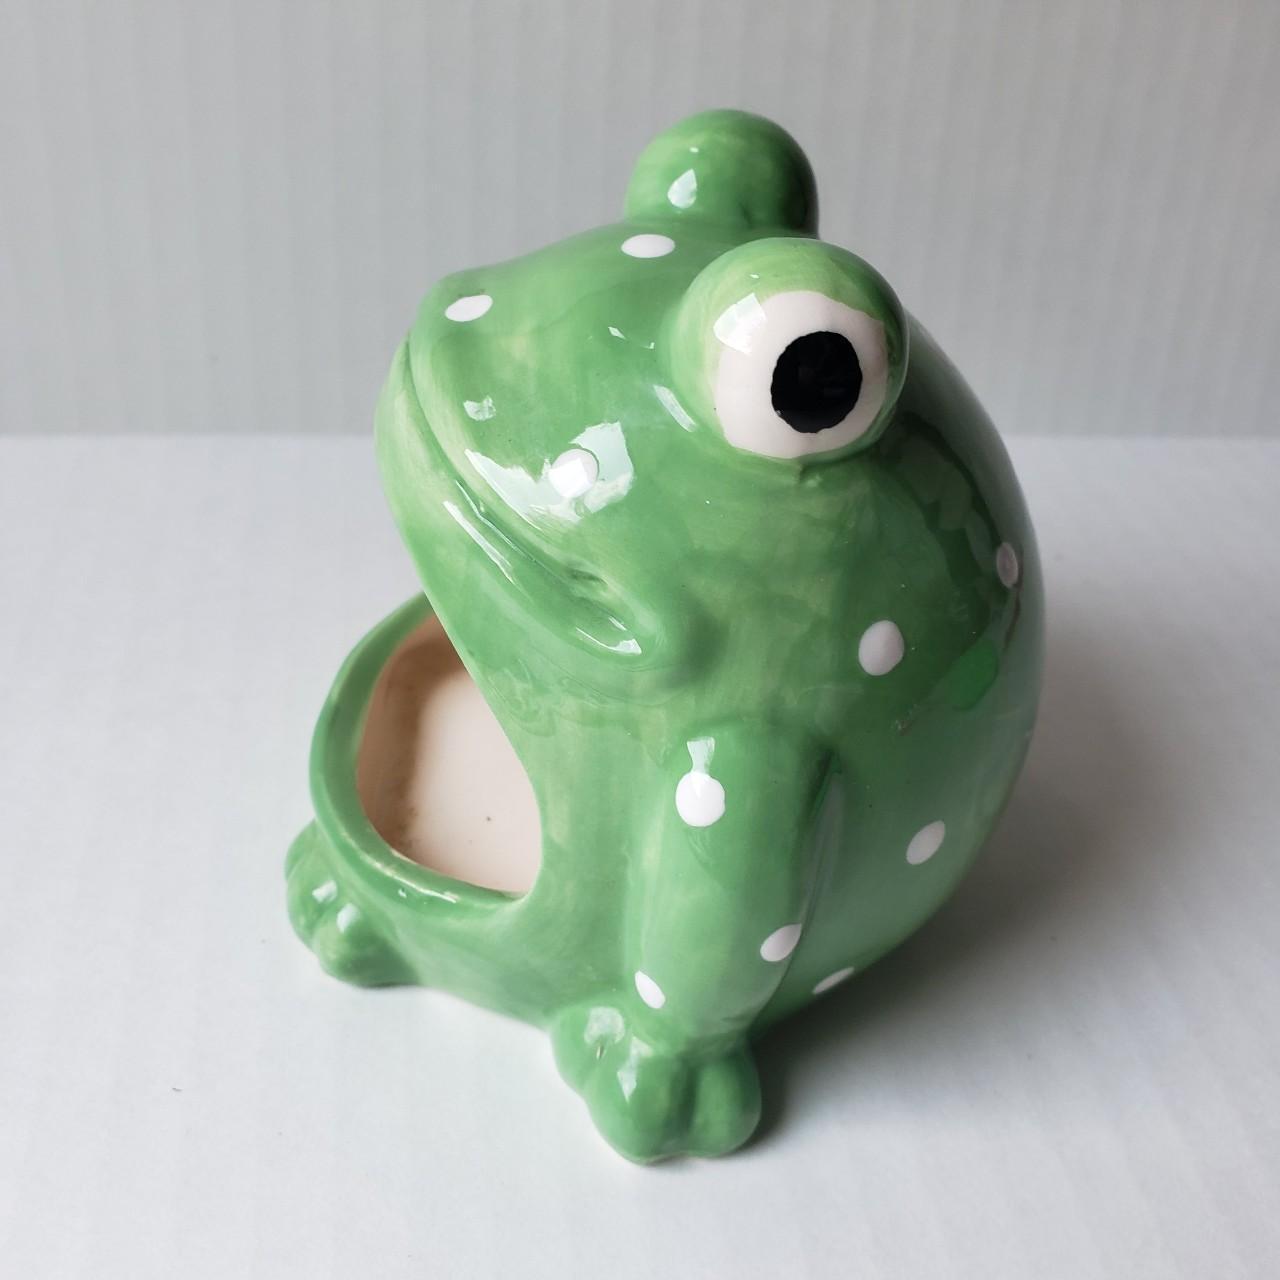 Kitchen, Vintage Ceramic Frog Mouth Sponge Holder Kitchen Home Decor